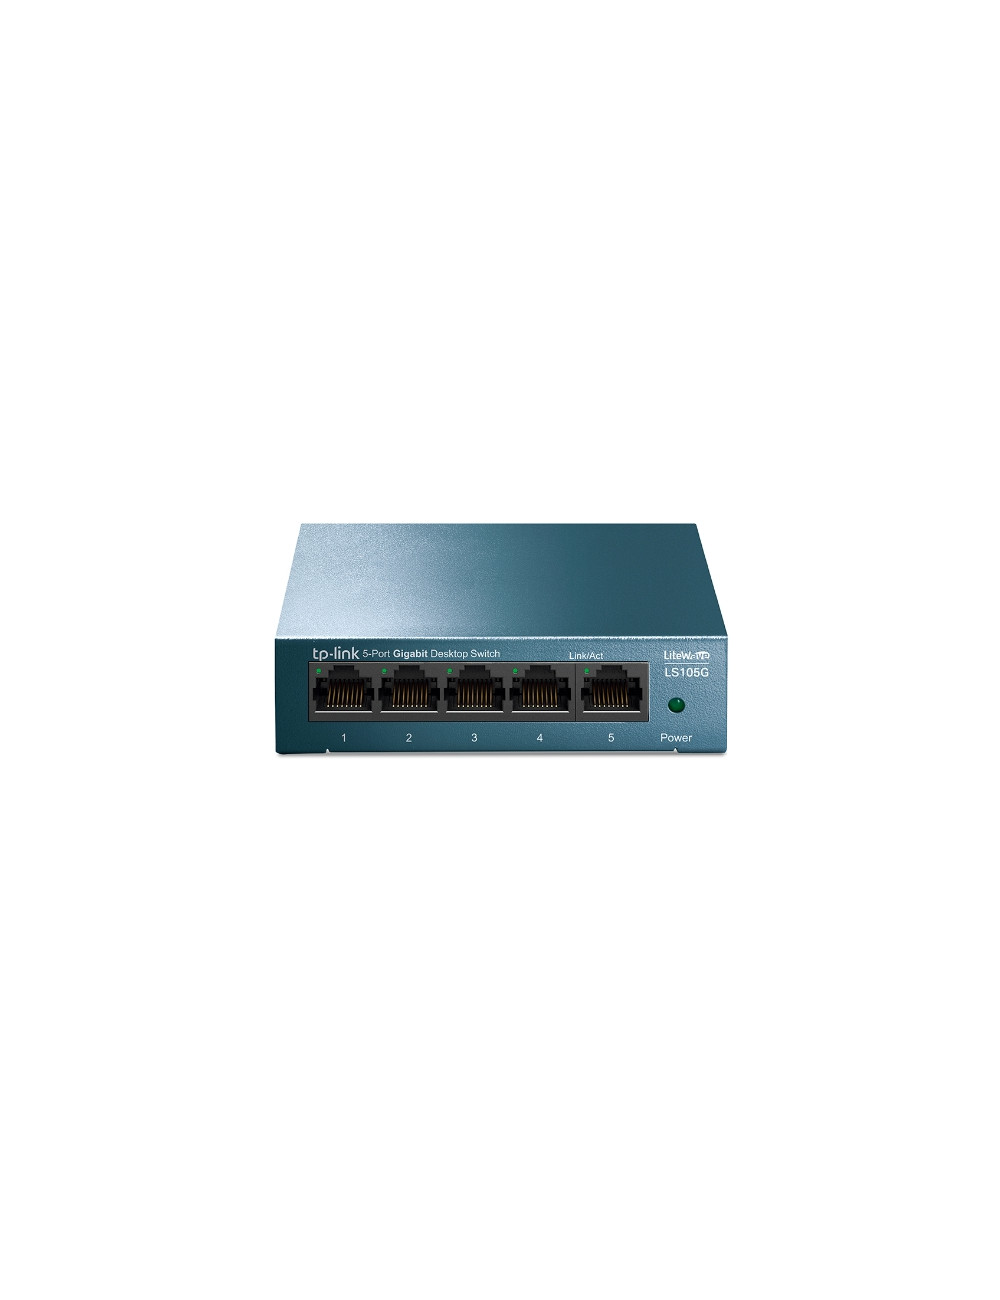 TP-LINK Desktop Network Switch LS105G 10/100/1000 Mbps (RJ-45), Unmanaged, Desktop, Ethernet LAN (RJ-45) ports 5